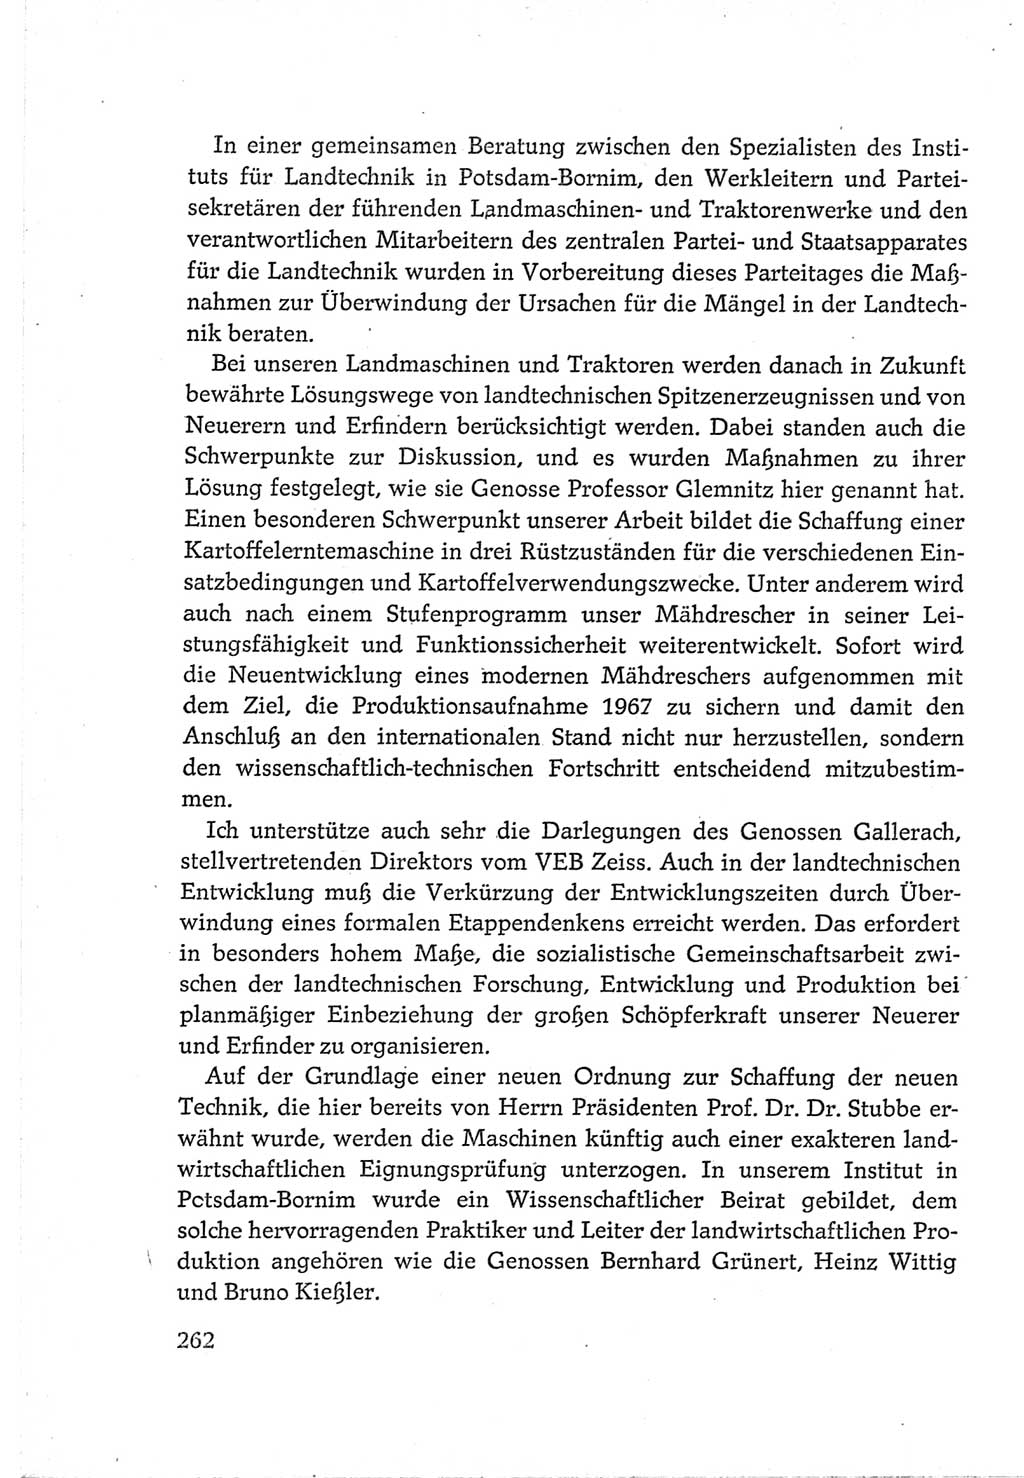 Protokoll der Verhandlungen des Ⅵ. Parteitages der Sozialistischen Einheitspartei Deutschlands (SED) [Deutsche Demokratische Republik (DDR)] 1963, Band Ⅲ, Seite 262 (Prot. Verh. Ⅵ. PT SED DDR 1963, Bd. Ⅲ, S. 262)